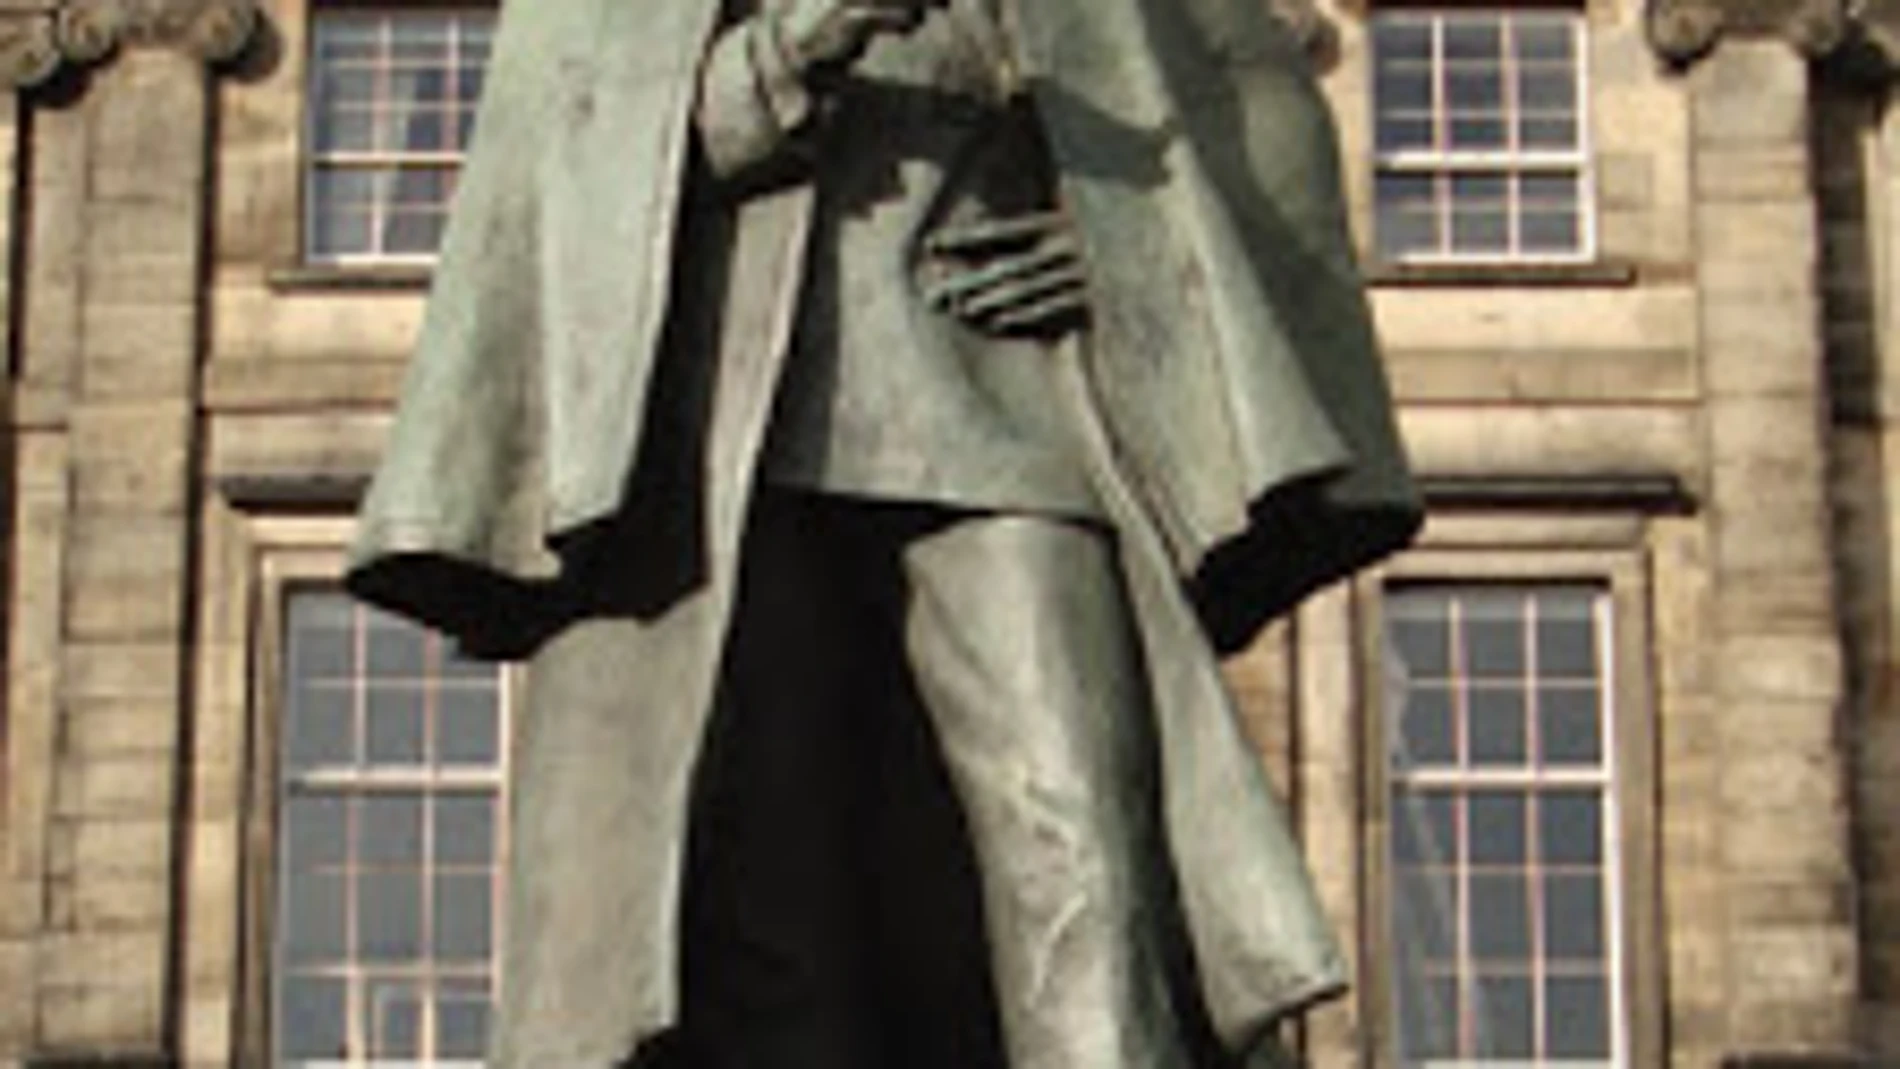 Estatua de Sherlock Holmes en Edimburgo. Ahora gracias a Máximo Pradera tenemos una versión humorística de él